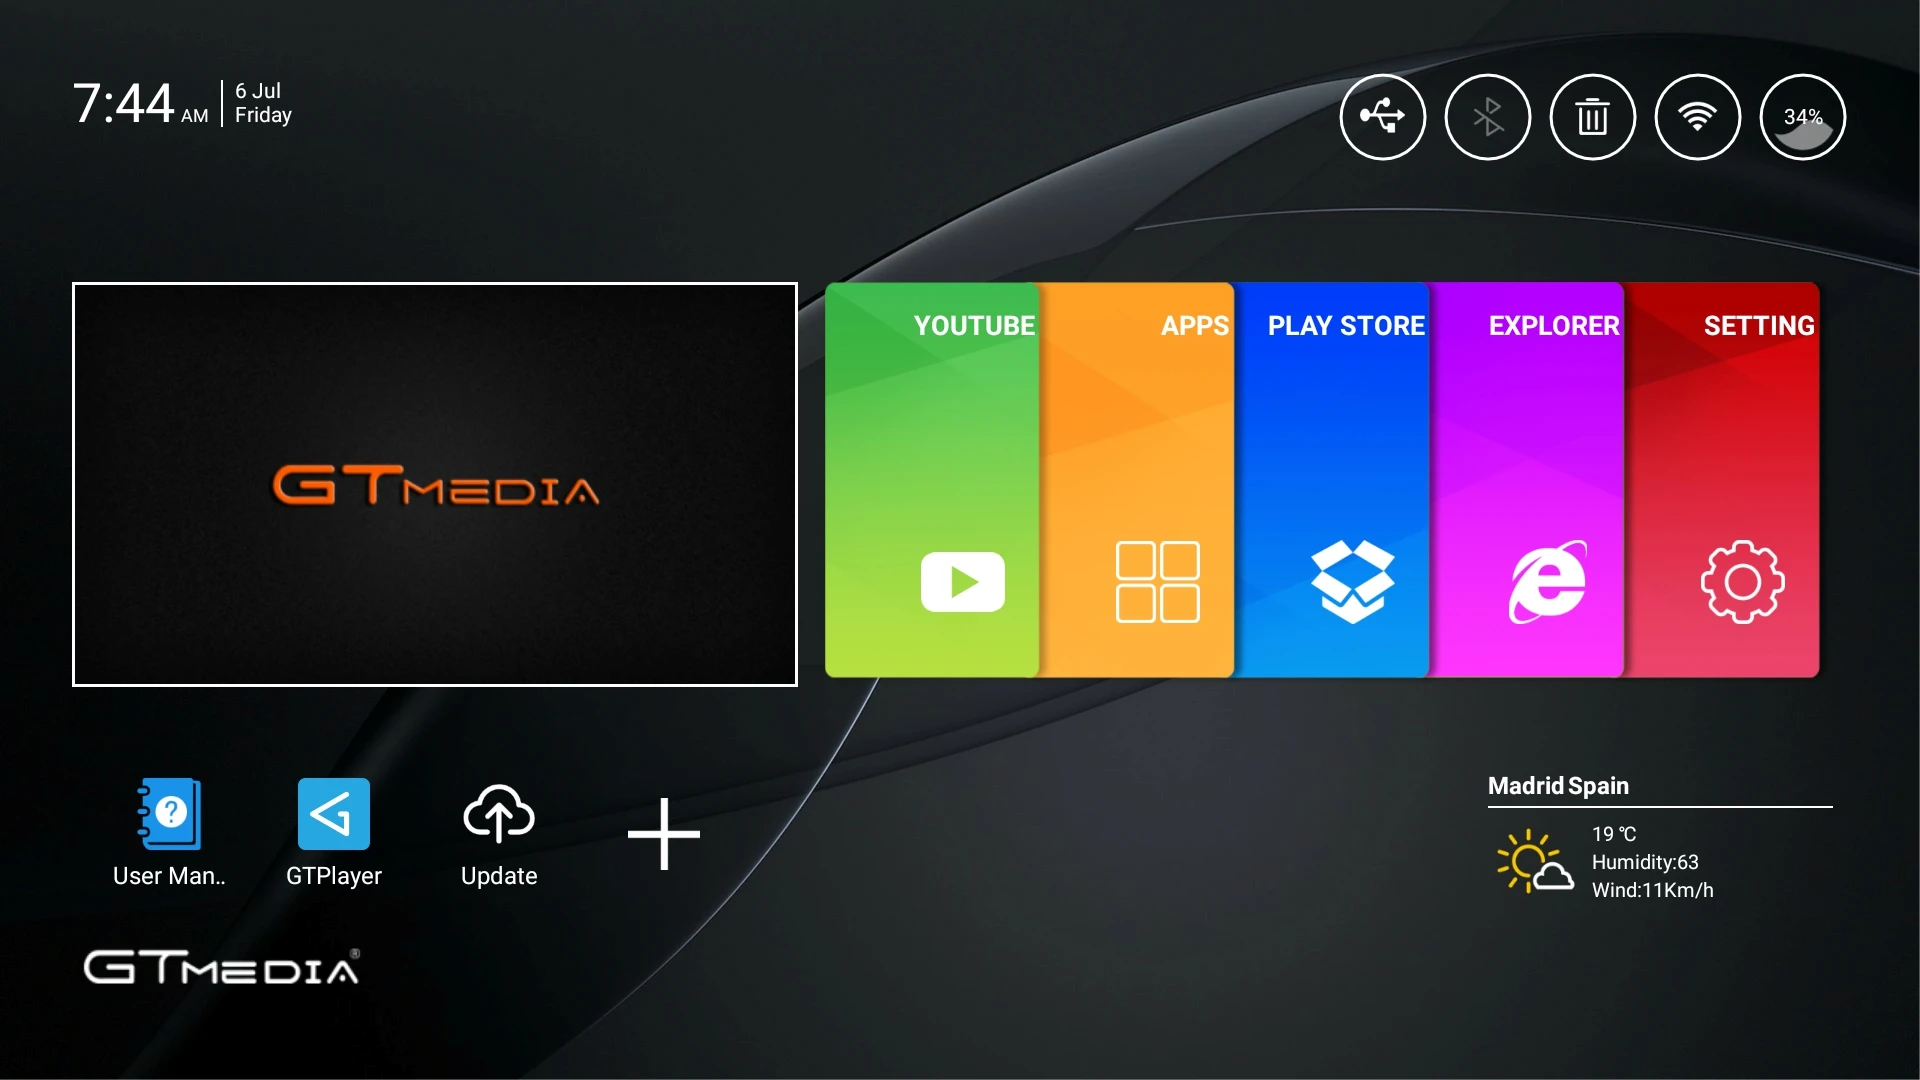 Freesat GTmedia GTS Android 6,0 4K Smart tv BOX Amlogic S905D комбинированный DVB-S2 спутниковый ресивер 2G/8GB BT4.0 телеприставка cccam m3u